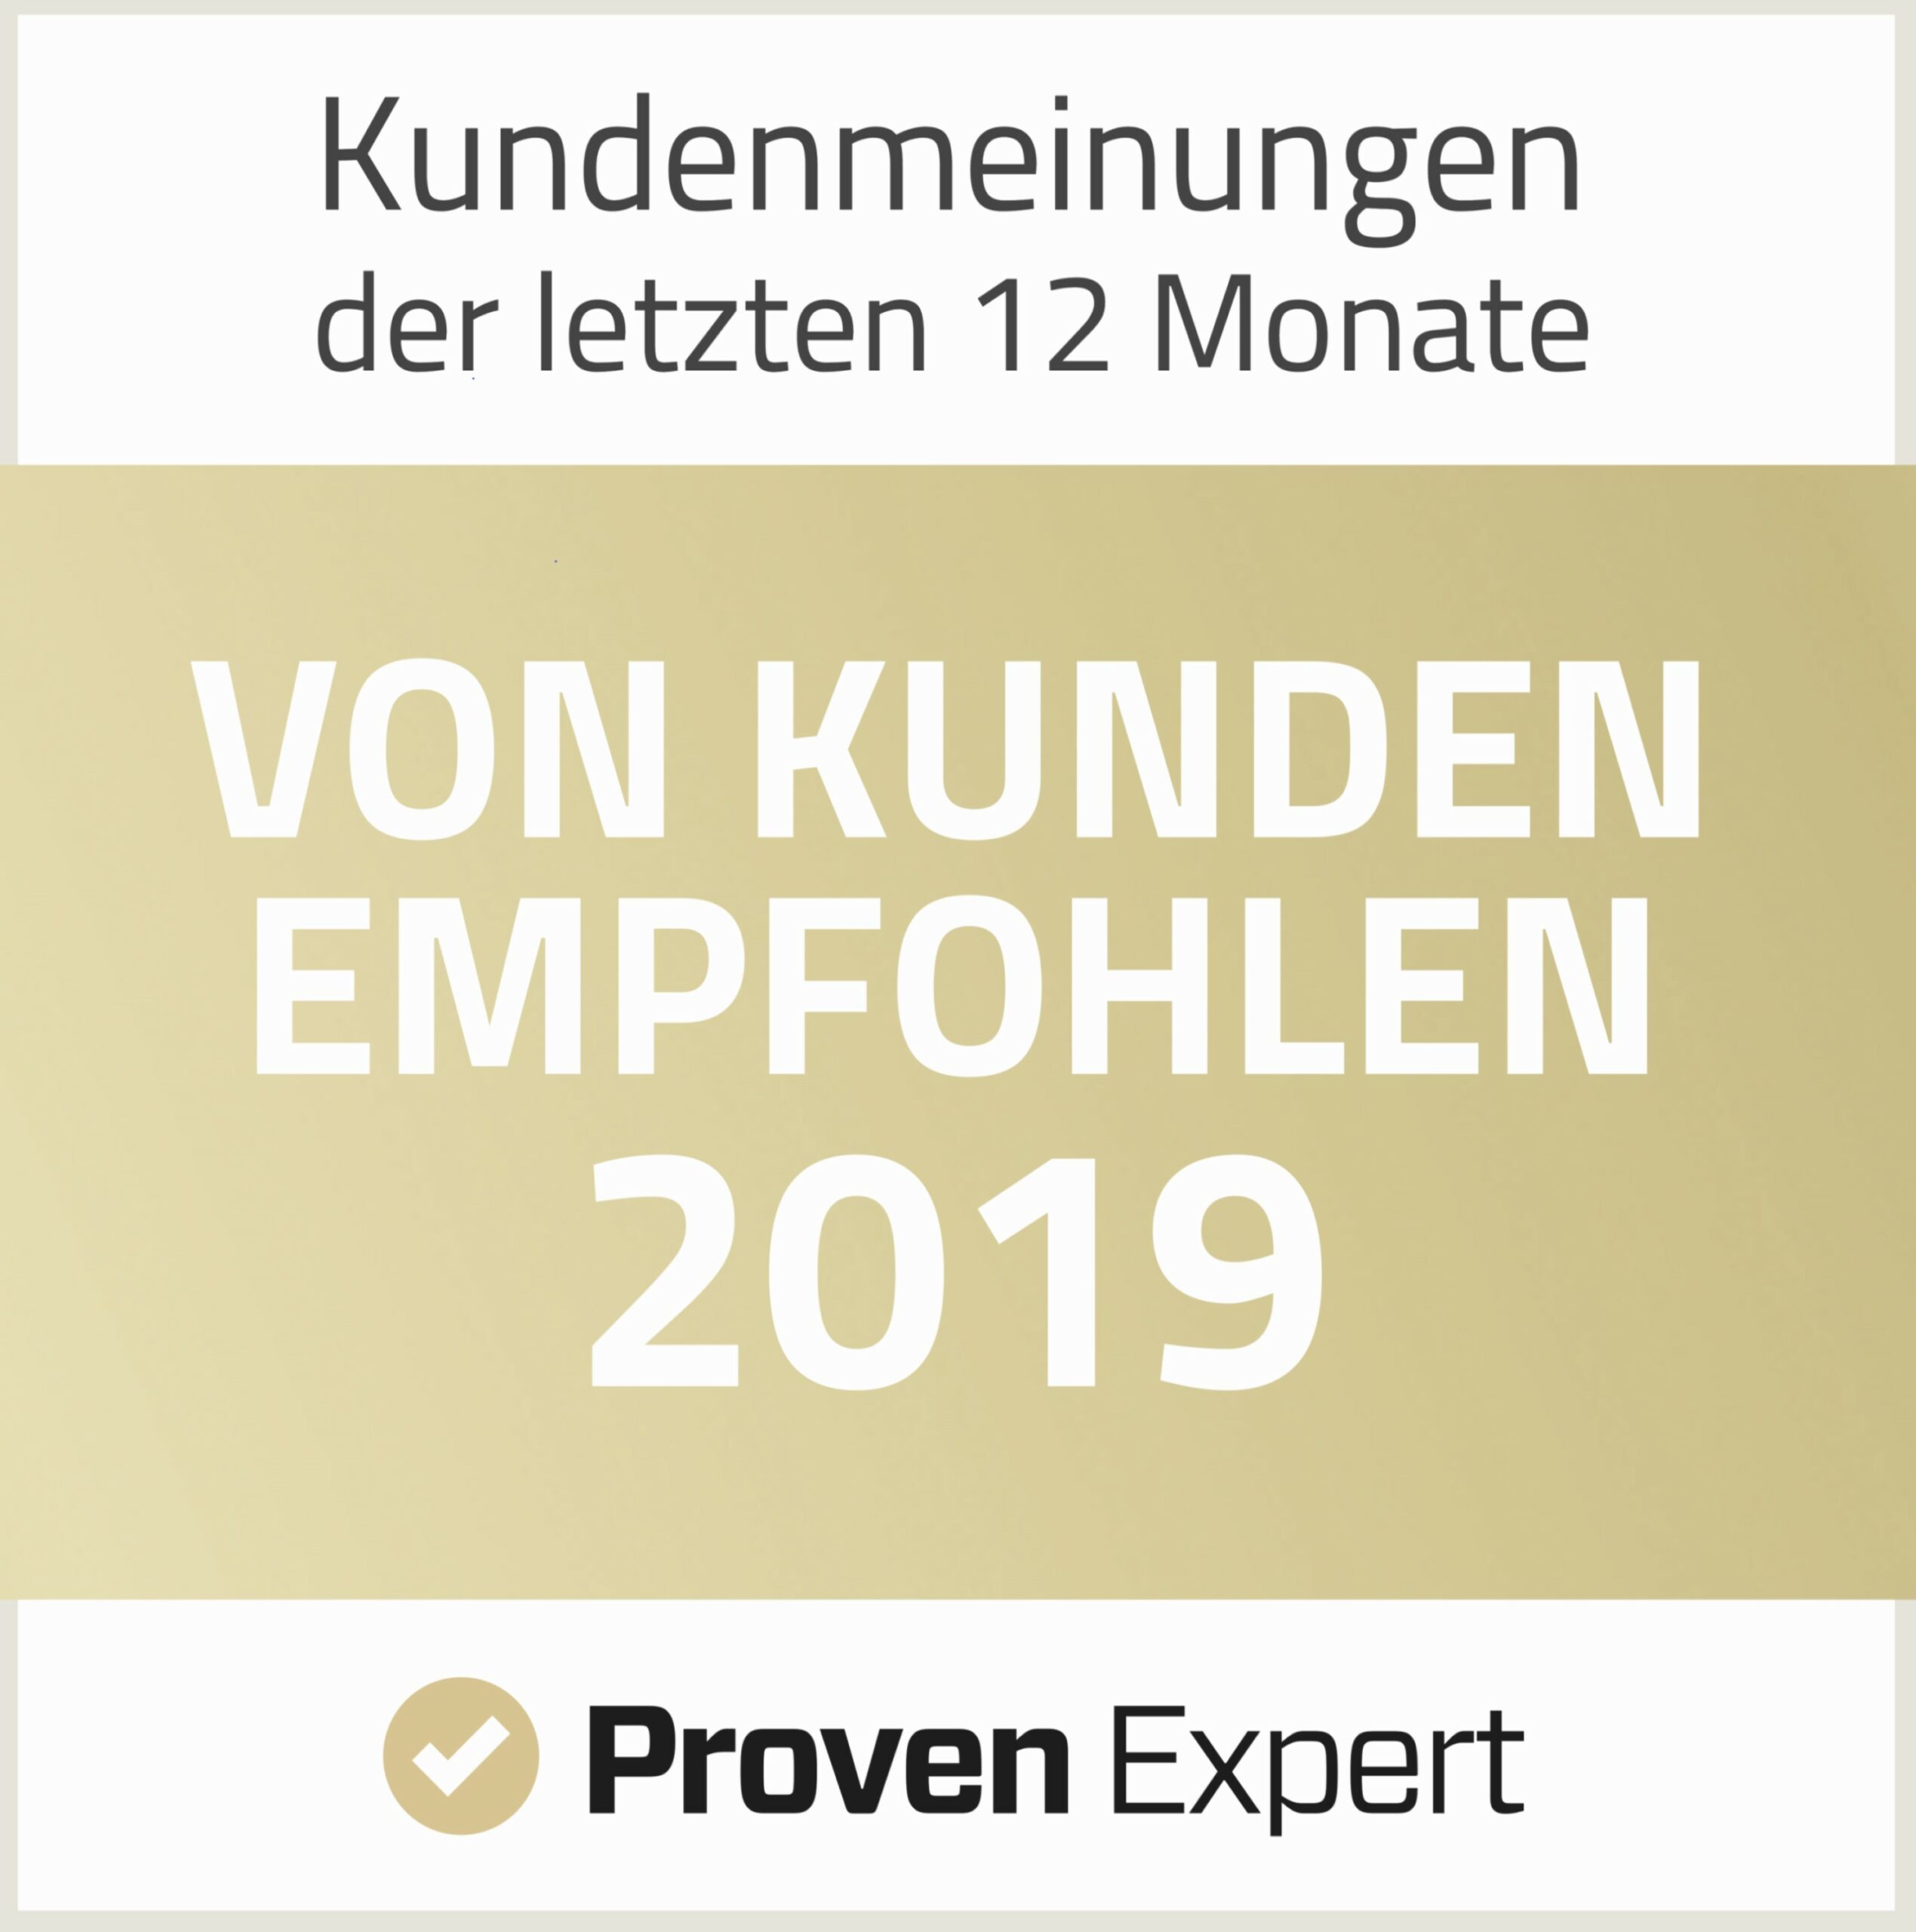 Proven Expert: Von Kunden Empfohlen 2019-Logo